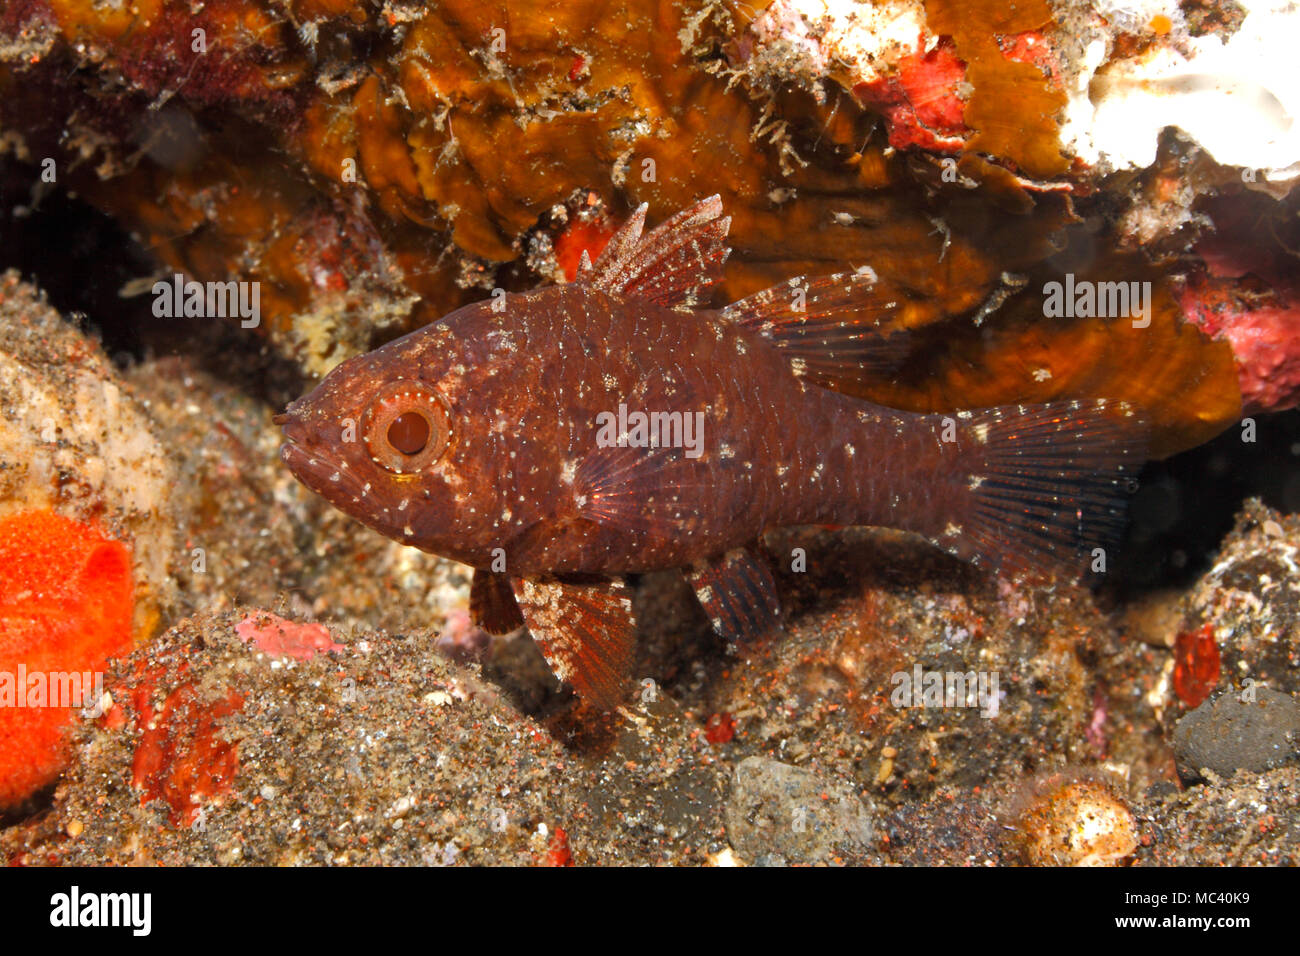 Weedy Cardinalfish, Foa fo. Also known as Samoan Cardinalfish. Tulamben, Bali, Indonesia. Bali Sea, Indian Ocean Stock Photo